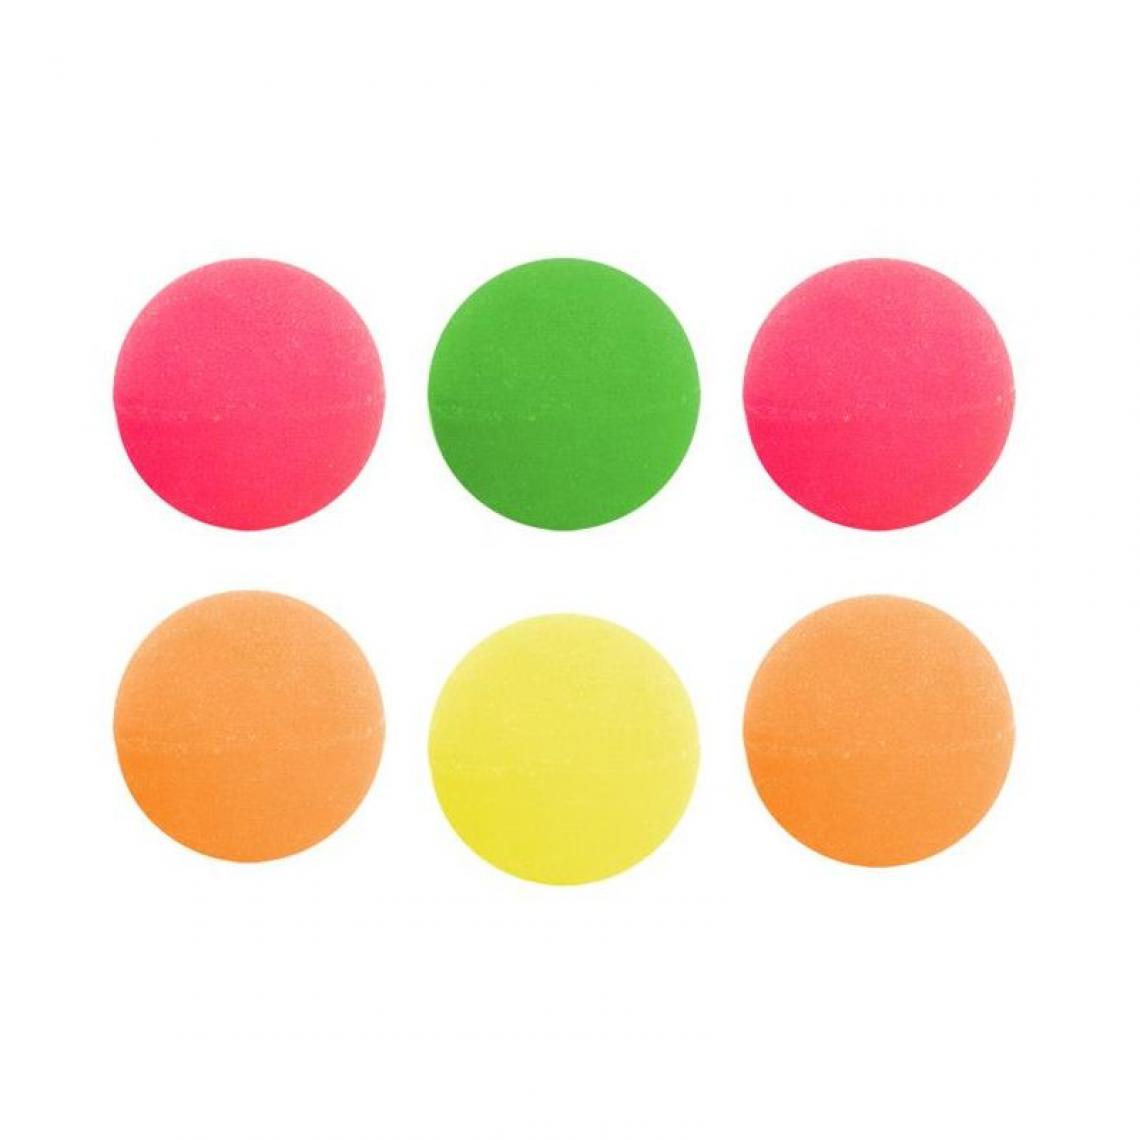 Paris Prix - Lot de 6 Balles Rebondissantes Fluo 3cm Multicolore - Jeux éducatifs